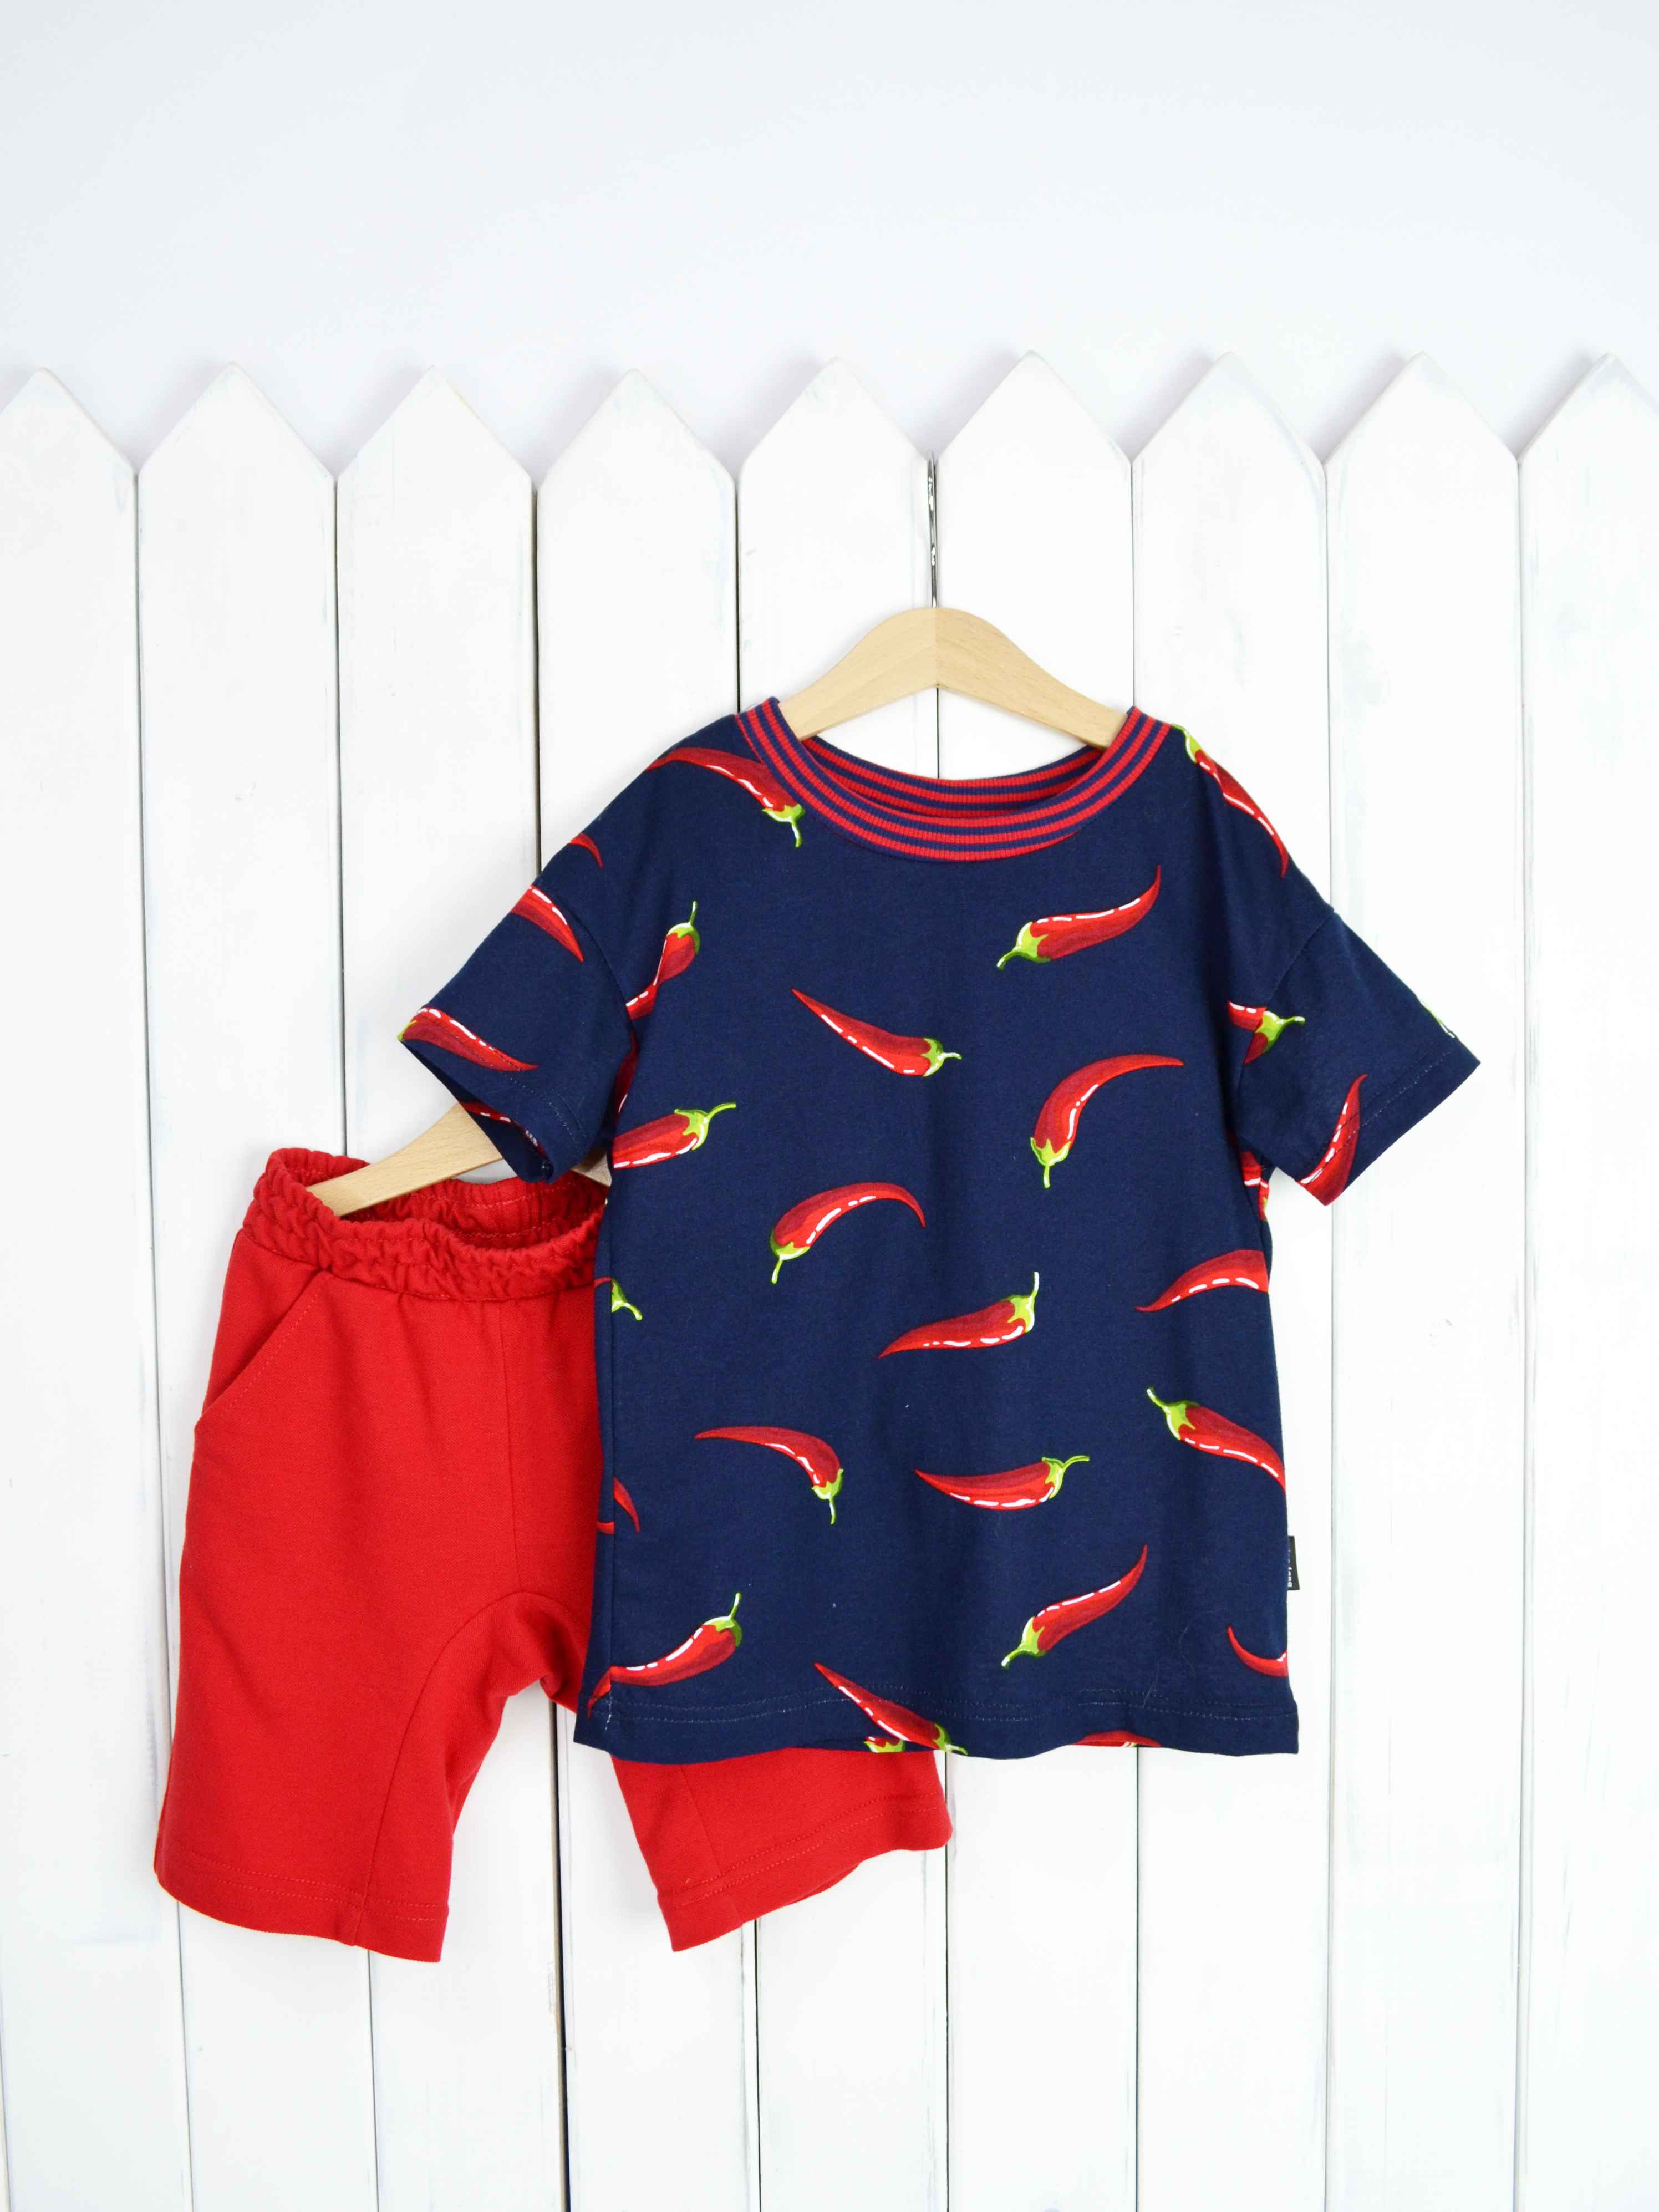 КД354/1-К Комплект детский р.110 Крутые перцы футболка+шорты/красное пике Бэби Бум